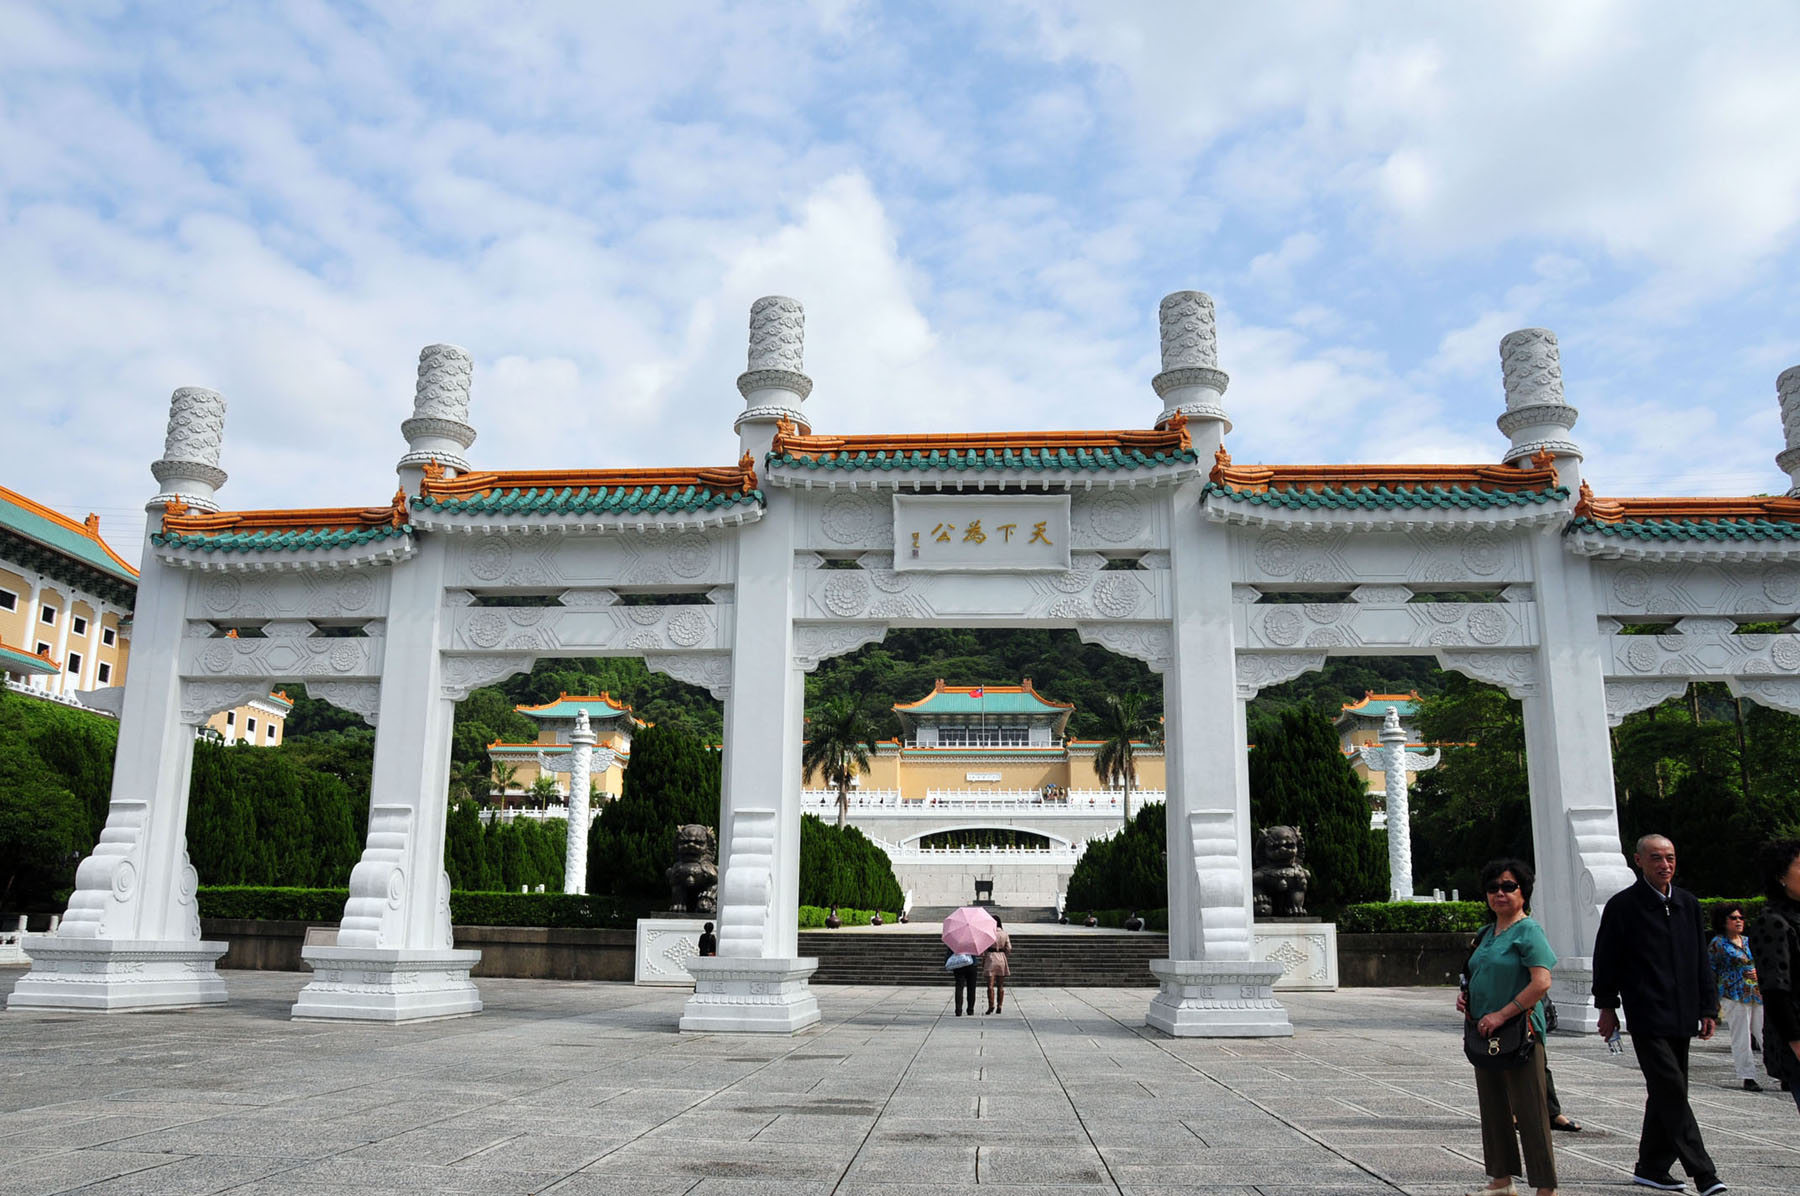 台北故宮博物院是中國兩個故宮博物院之一